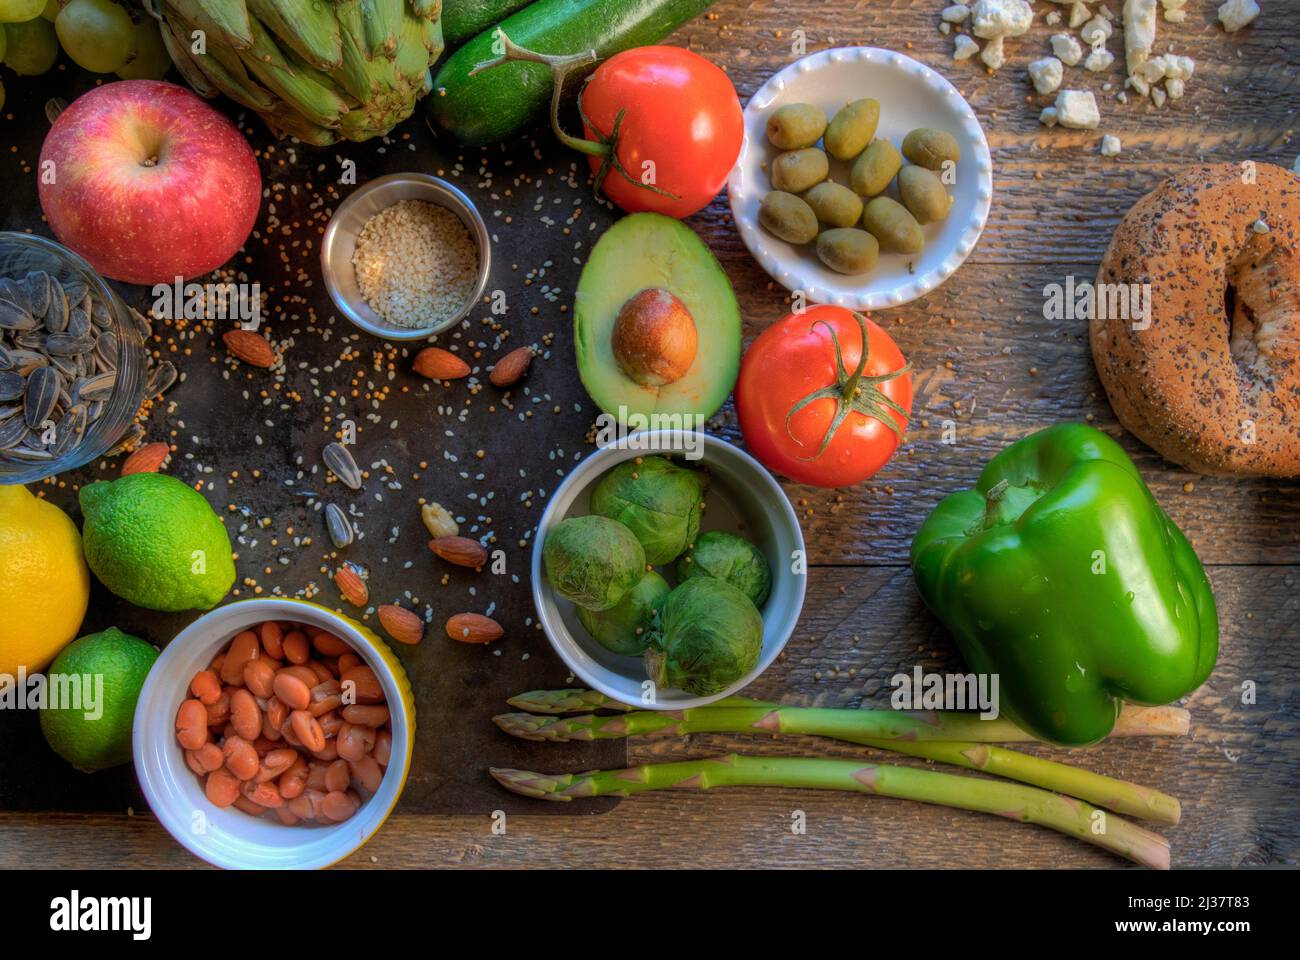 Cucina mediterranea visualizzata su superfici naturali vista dall'alto. Foto Stock